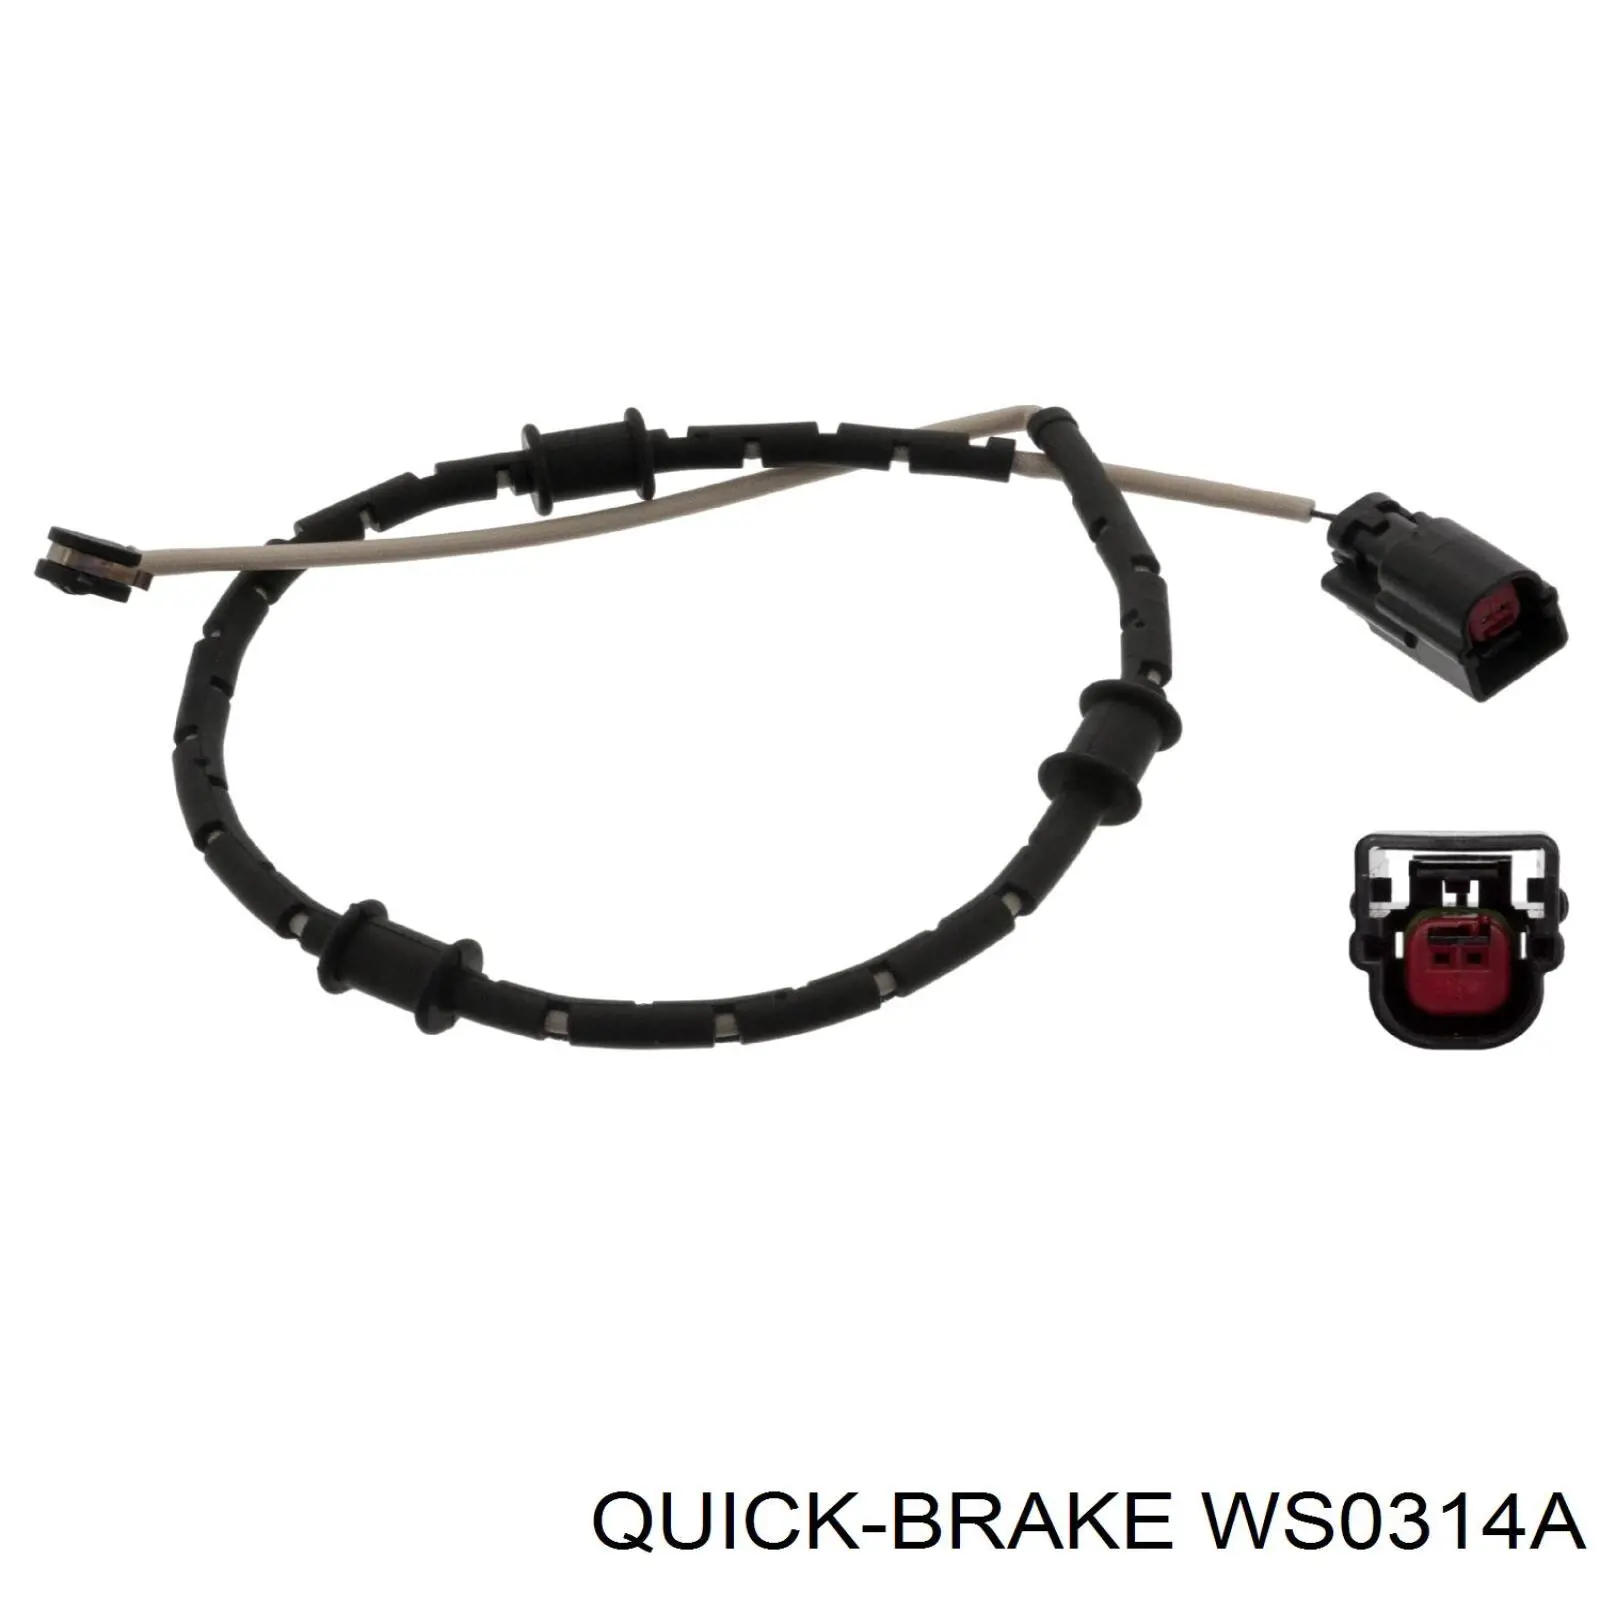 WS0314A Quick Brake contacto de aviso, desgaste de los frenos